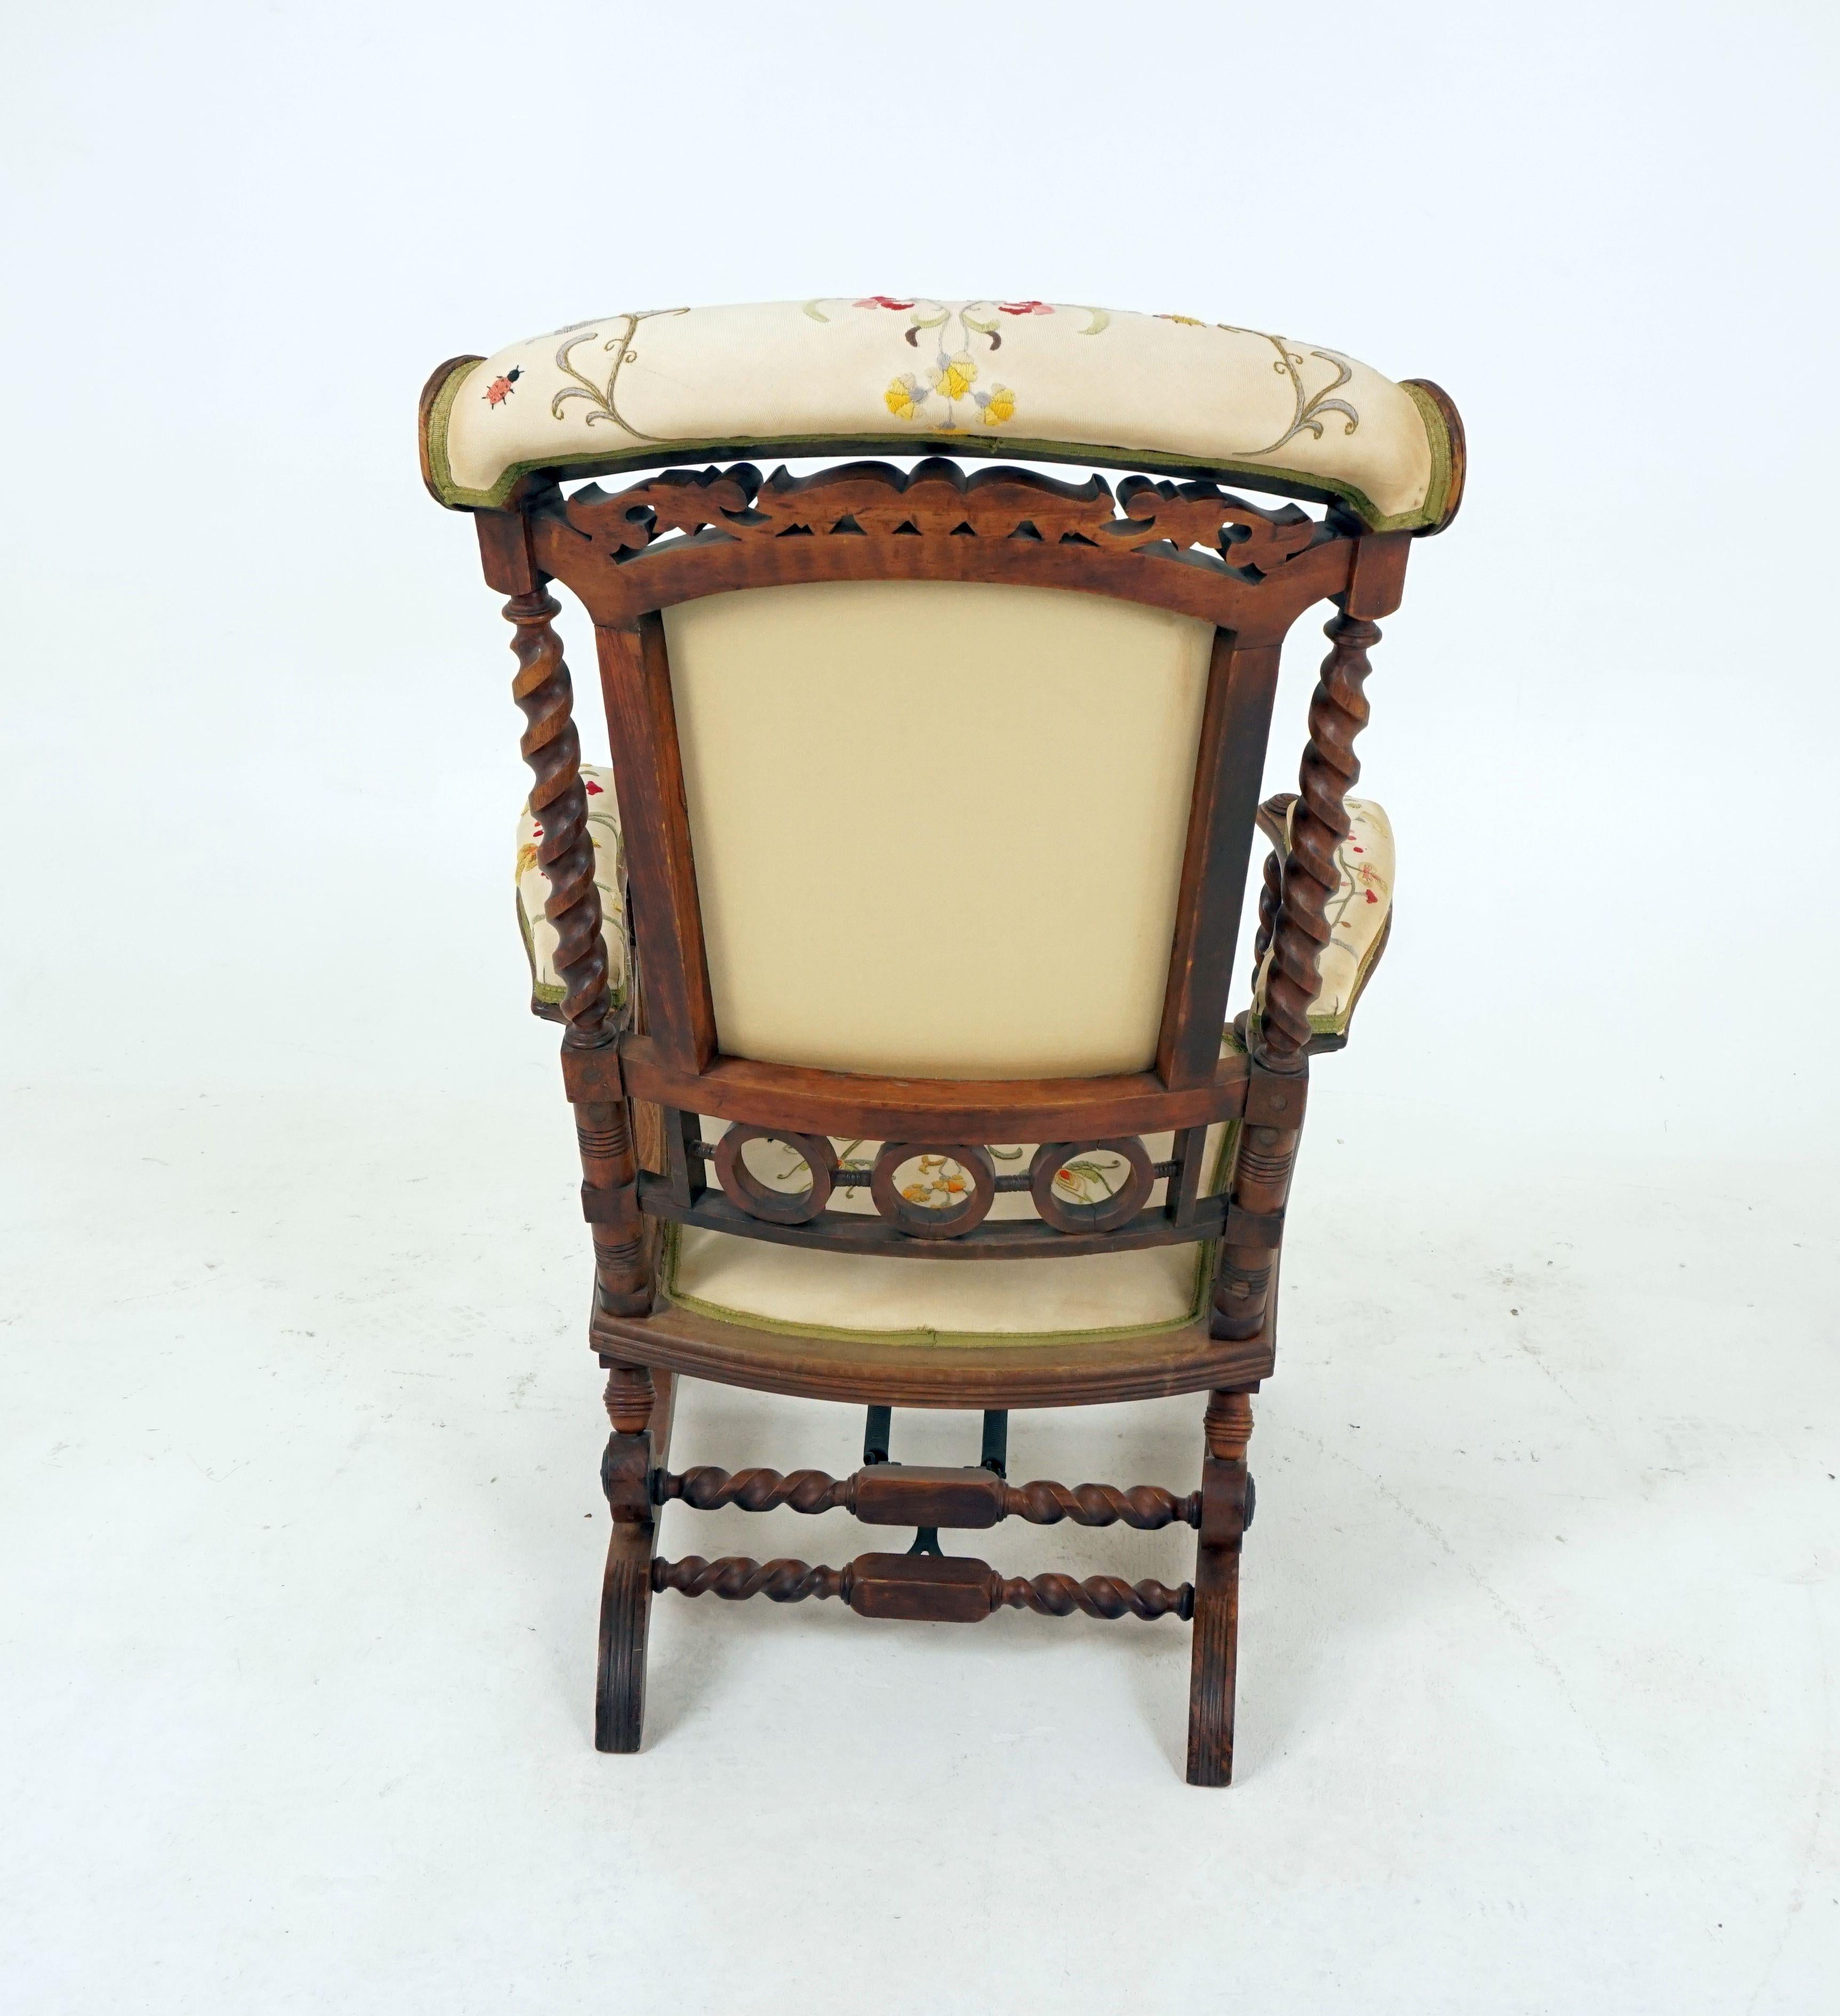 Antique Rocking Chair Walnut Barley Twist George Hunzinger American 1880, B2537 1